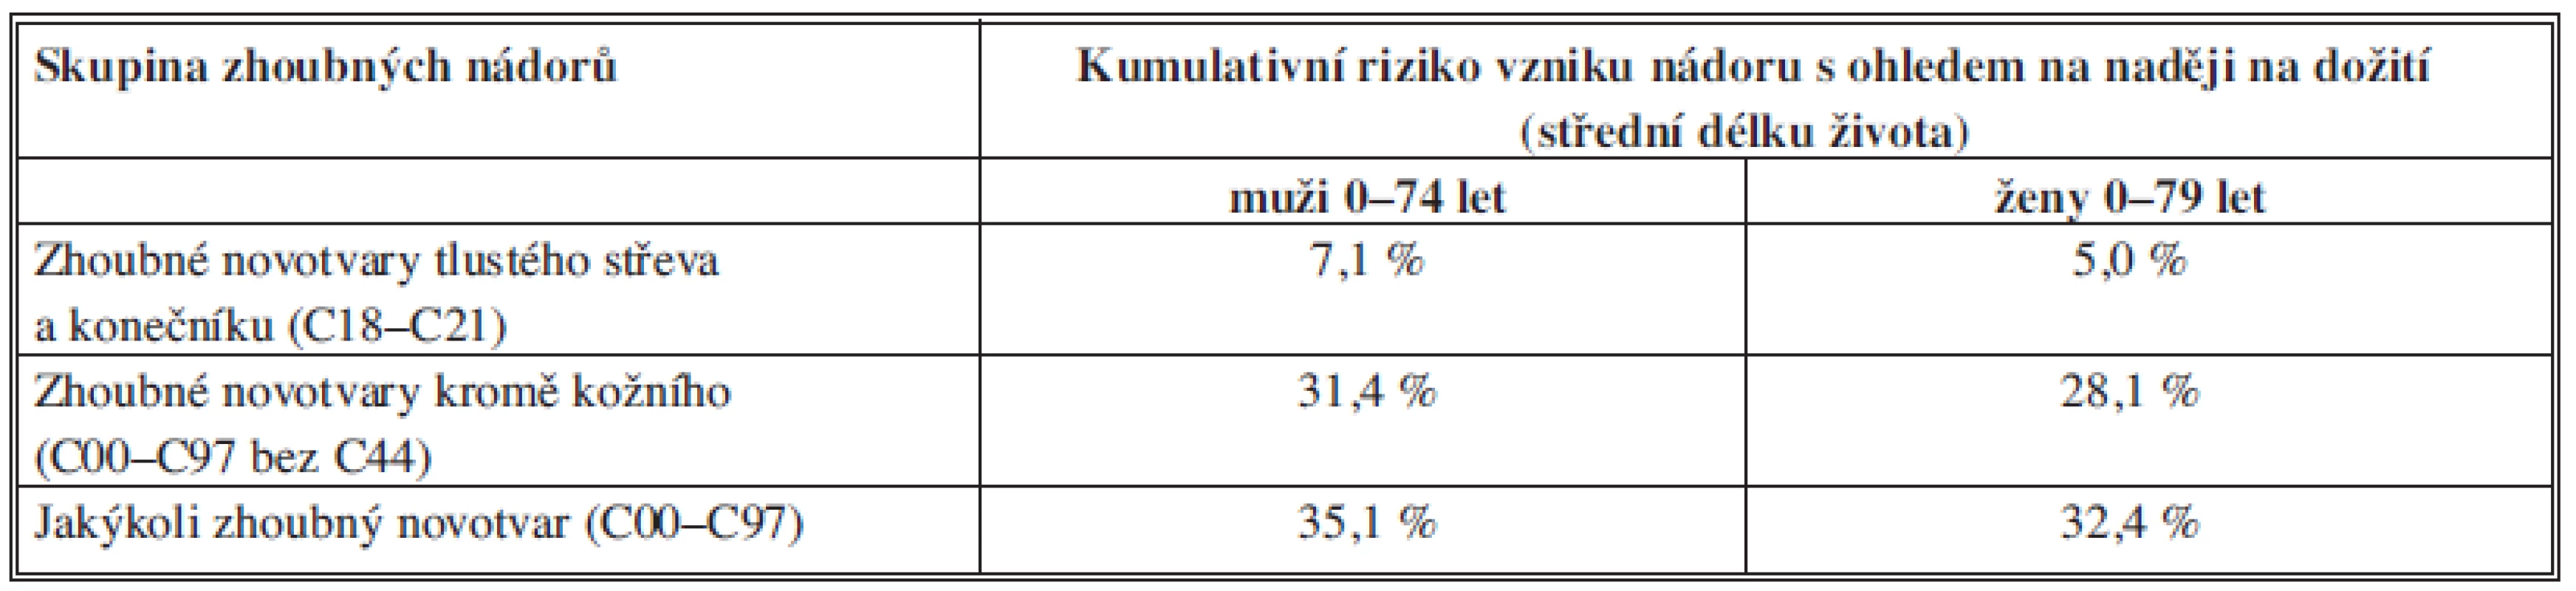 Kumulativní riziko vzniku nádorového onemocnění v české populaci.